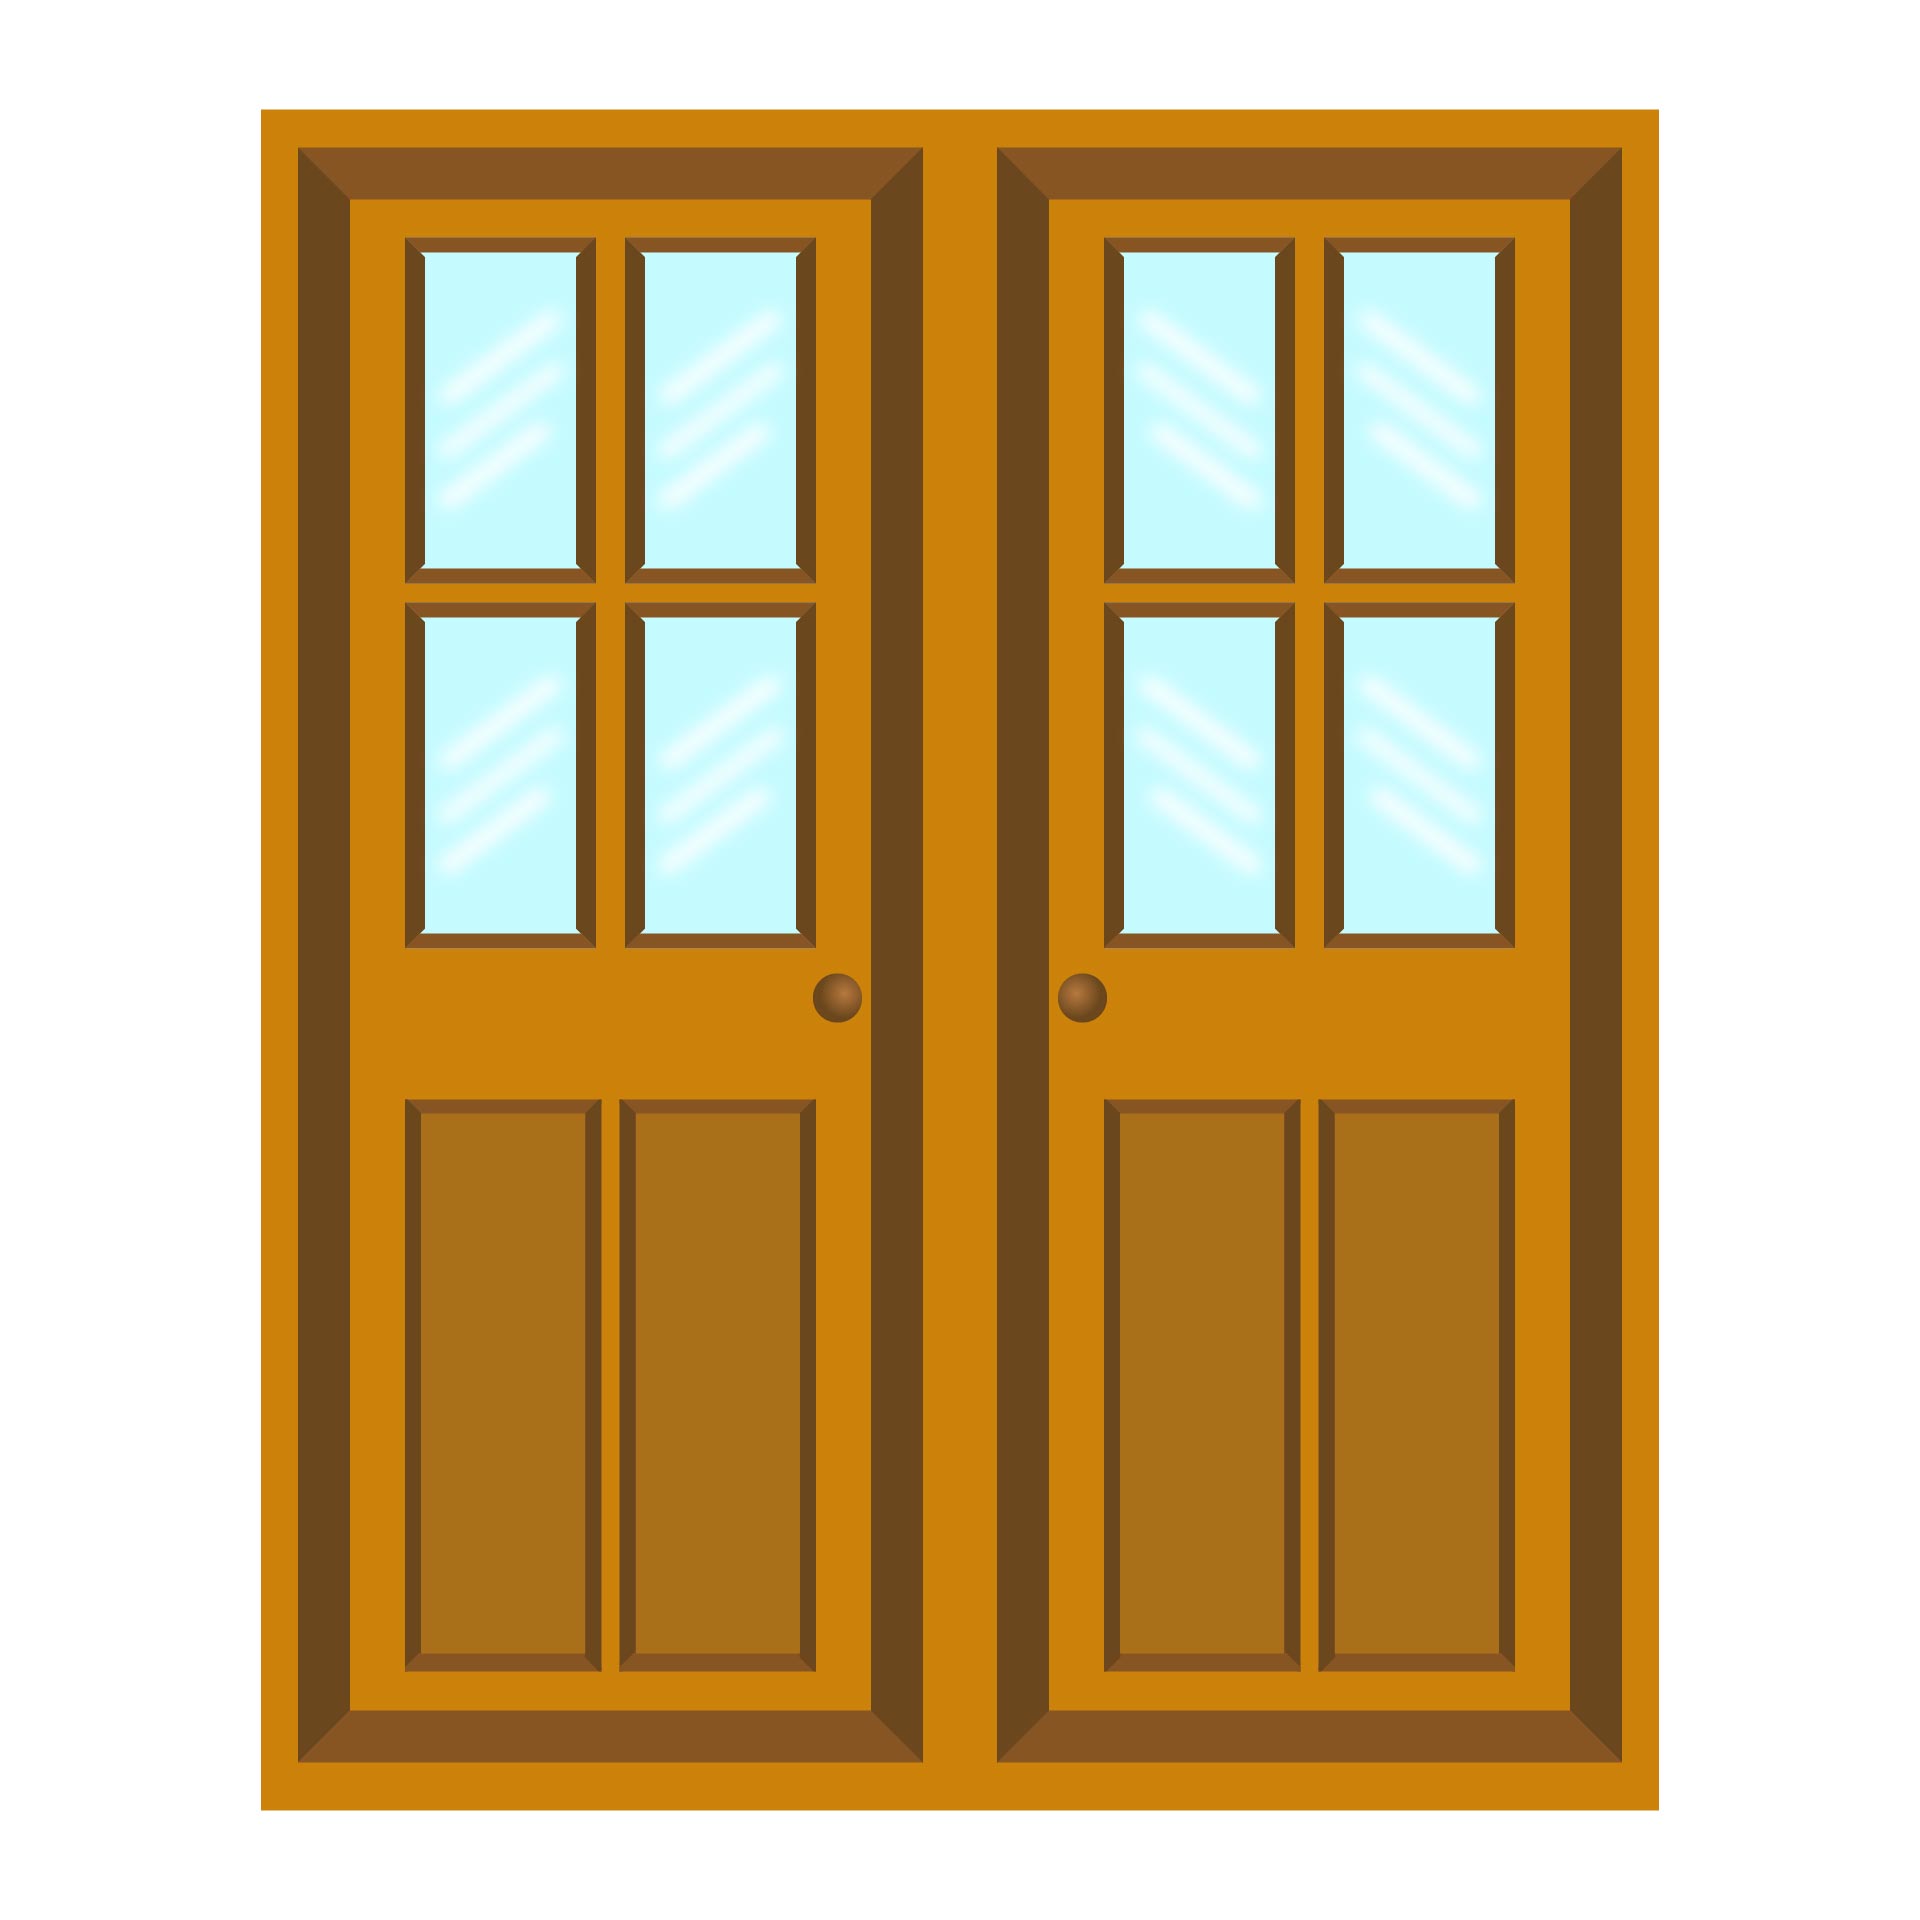 Door Templates & Door Hanger Pattern. Use The Printable Outline For